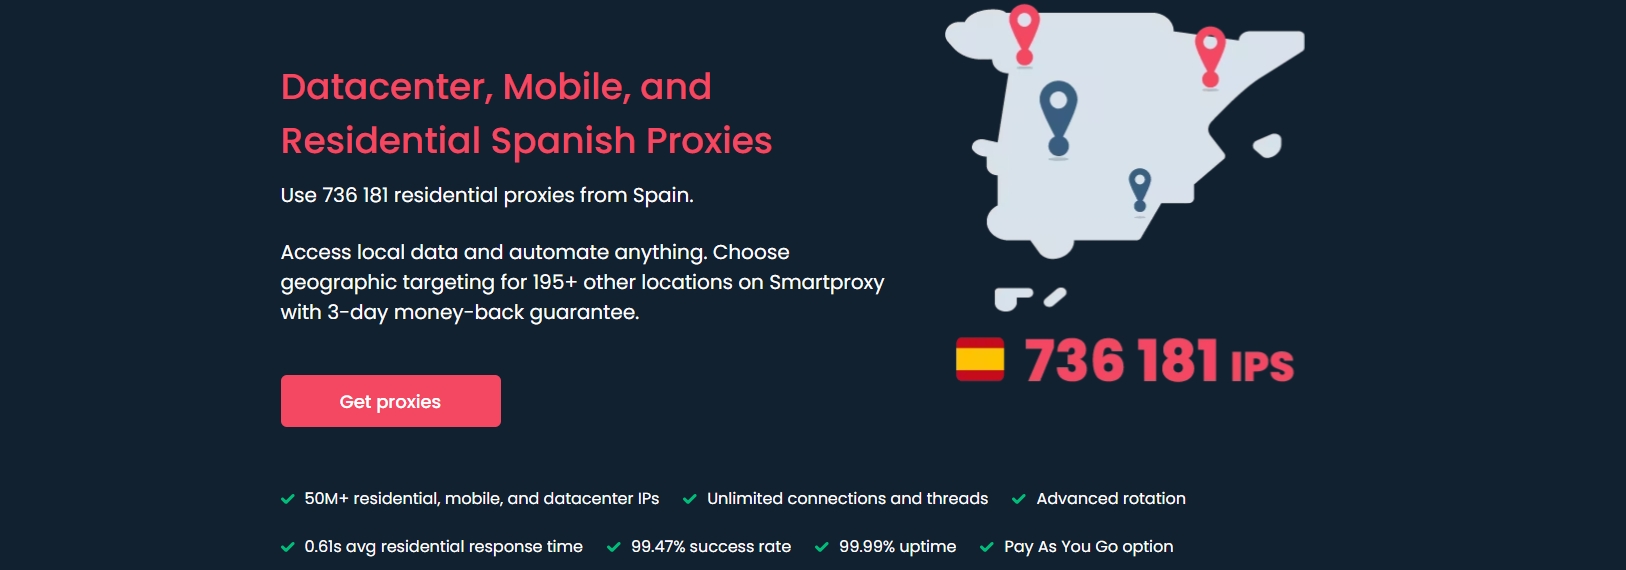 أفضل 11 مزودًا للبروكسي في إسبانيا لتجربة إنترنت بلا حدود [2023]